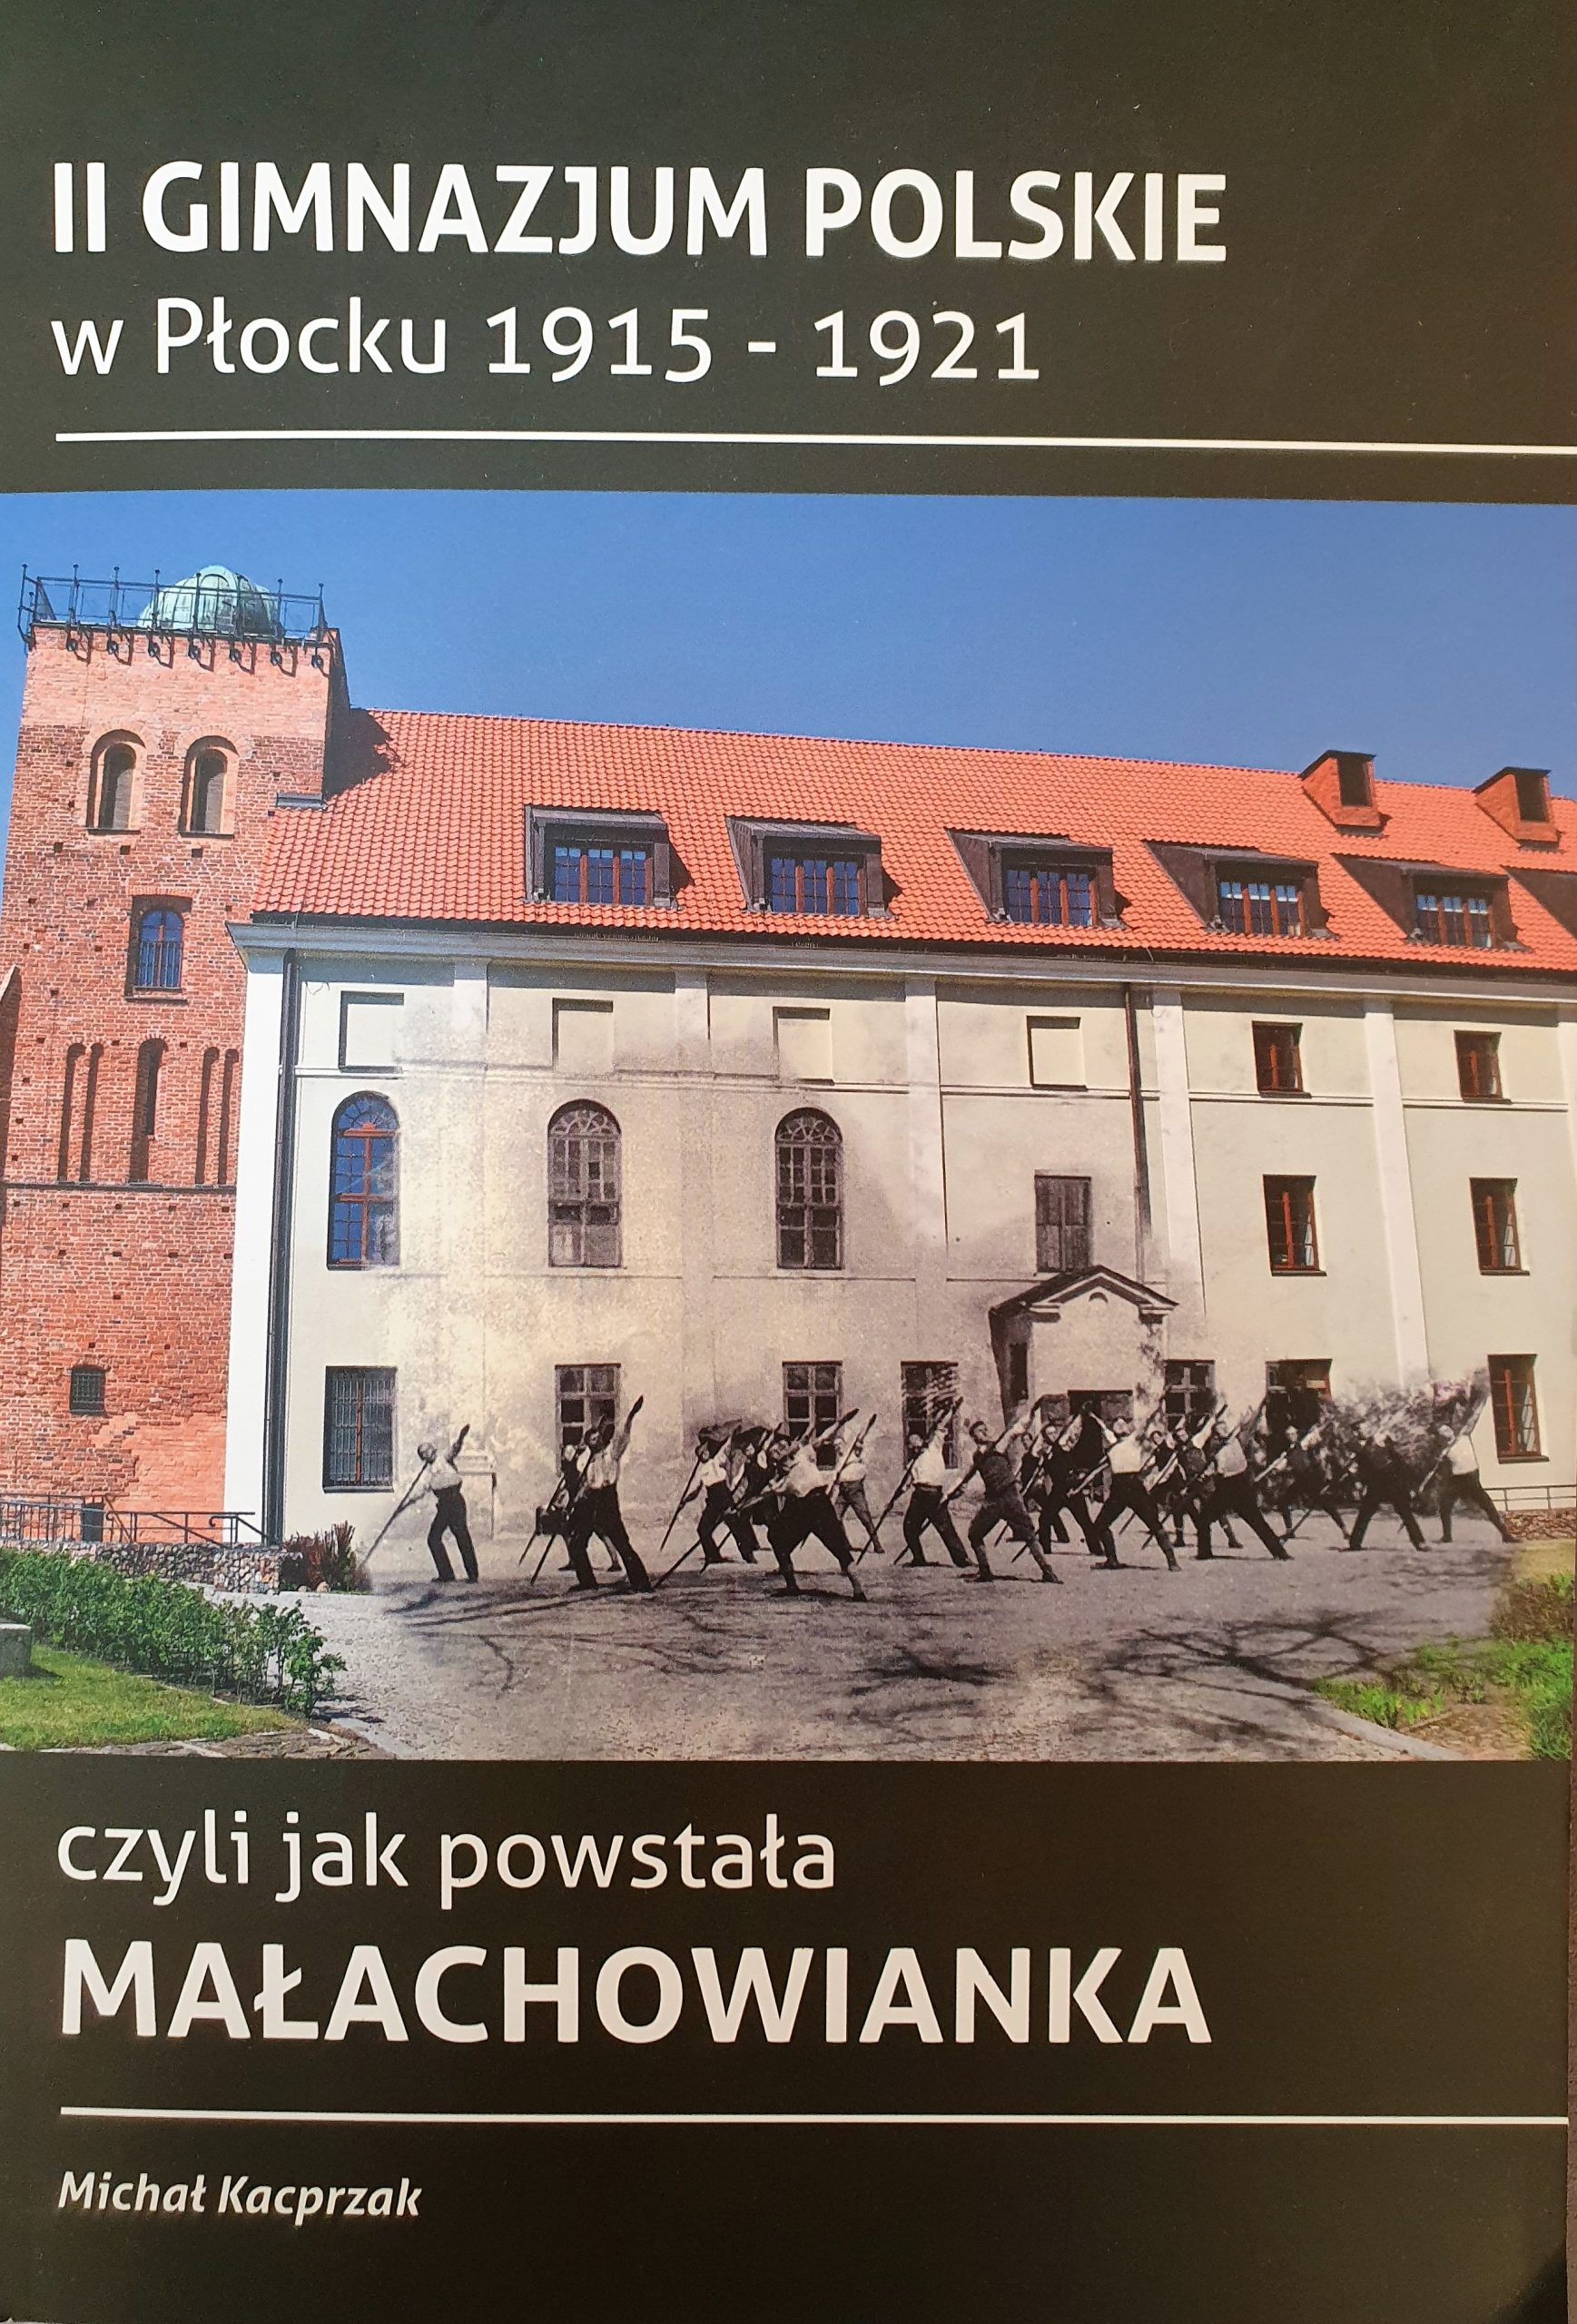 II Gimnazjum Polskie w Płocku 1915-1921